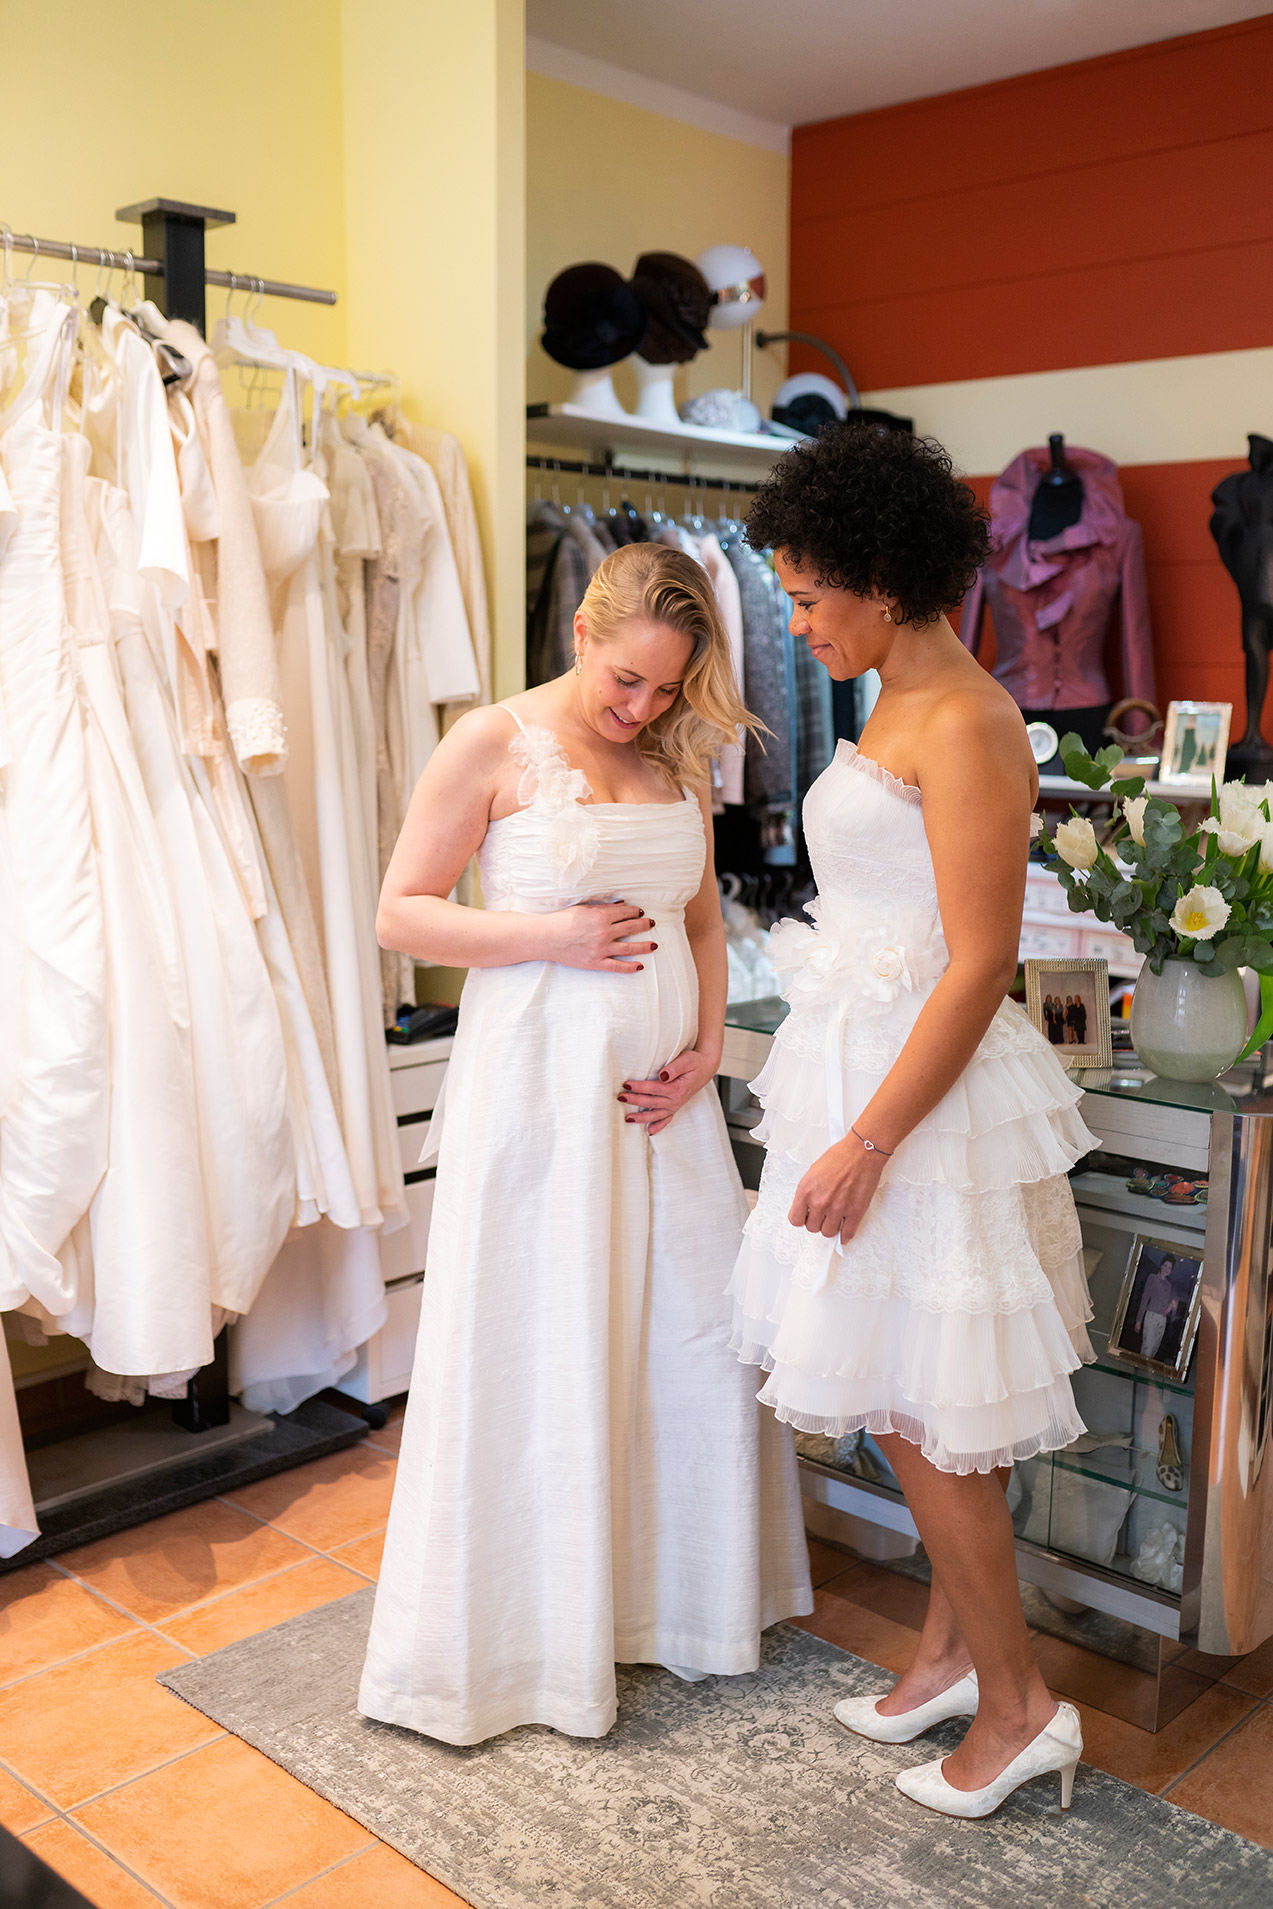 Braut- und Brautjungfer bei Anprobe Ihrer Kleider für die Hochzeit